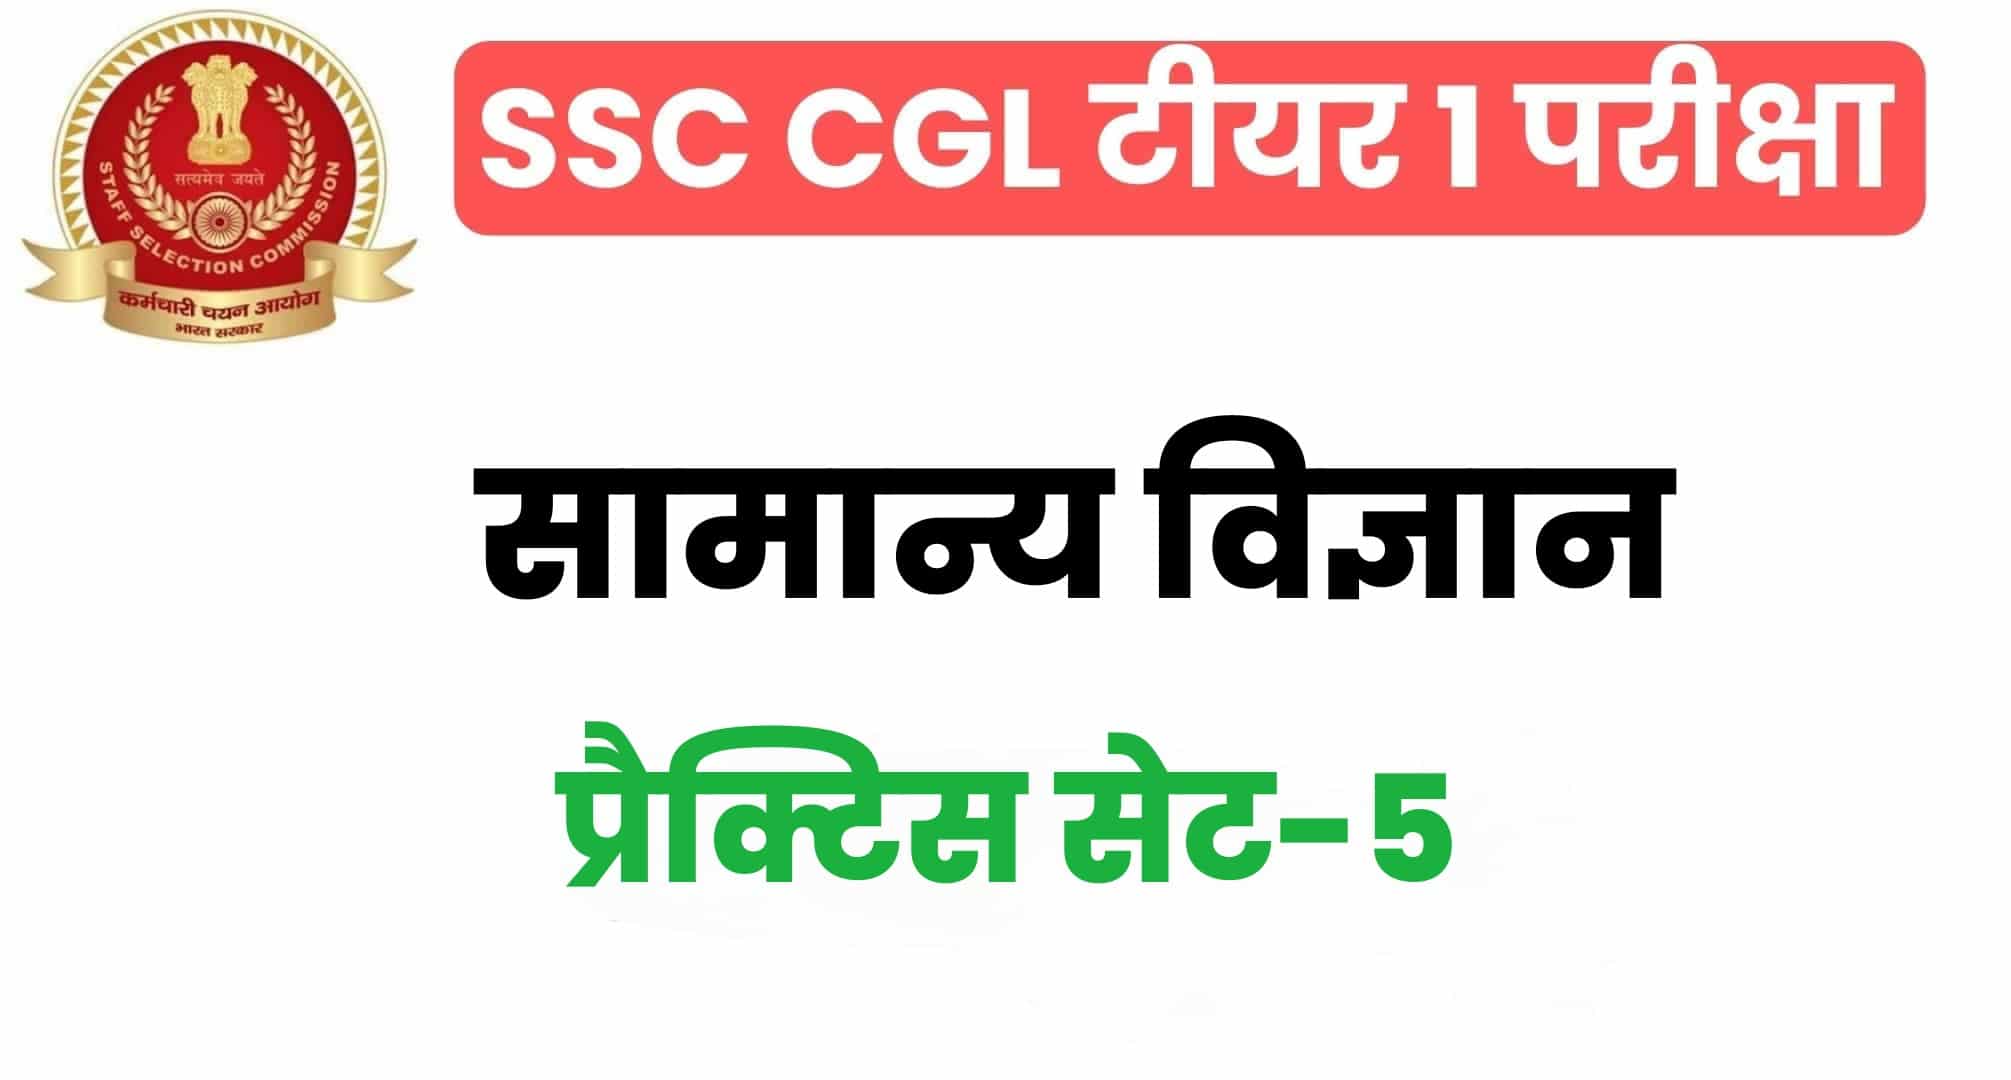 SSC CGL General Science प्रैक्टिस सेट 5 : सामान्य विज्ञान के 25 महत्वपूर्ण प्रश्न, परीक्षा से पहले पढ़ लें